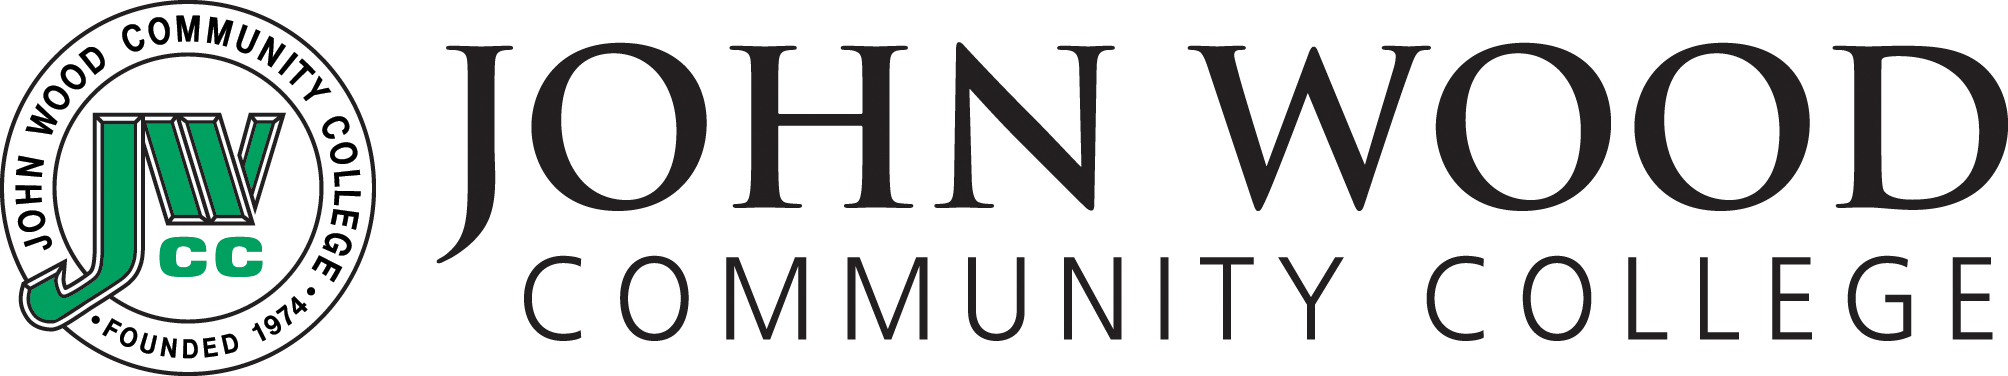 JWCC logo